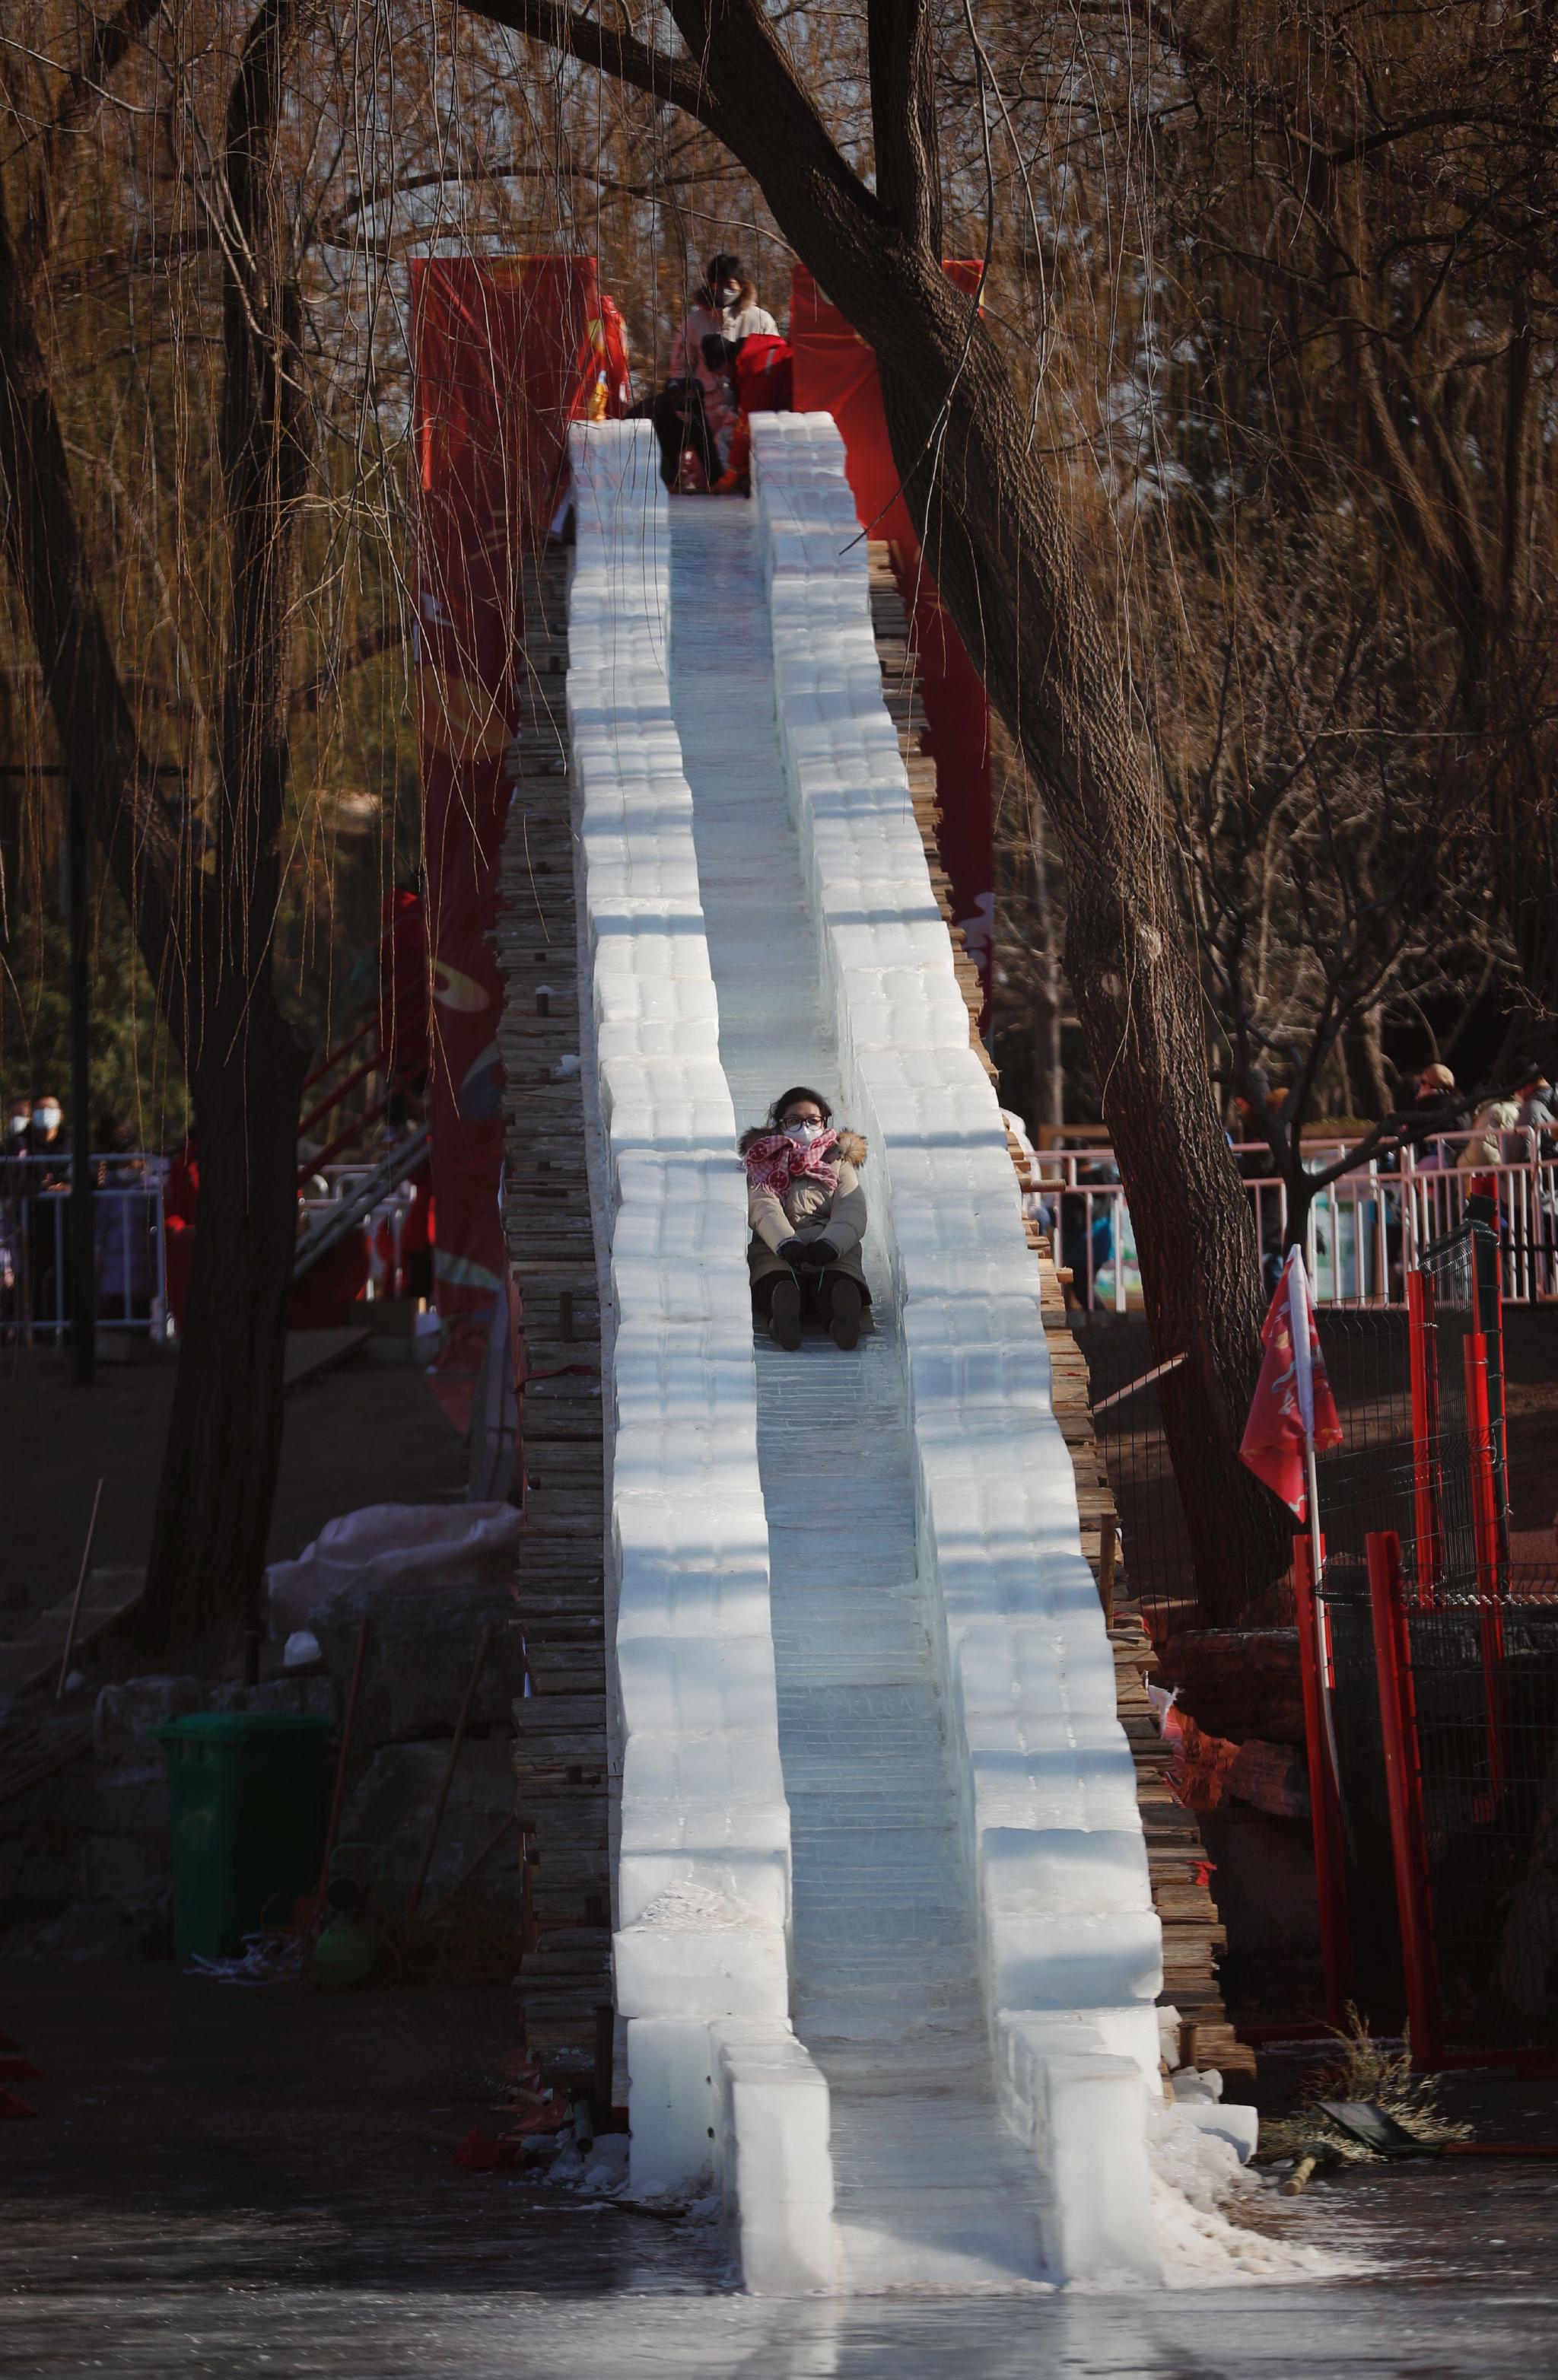 紫竹院公园滑雪2022图片